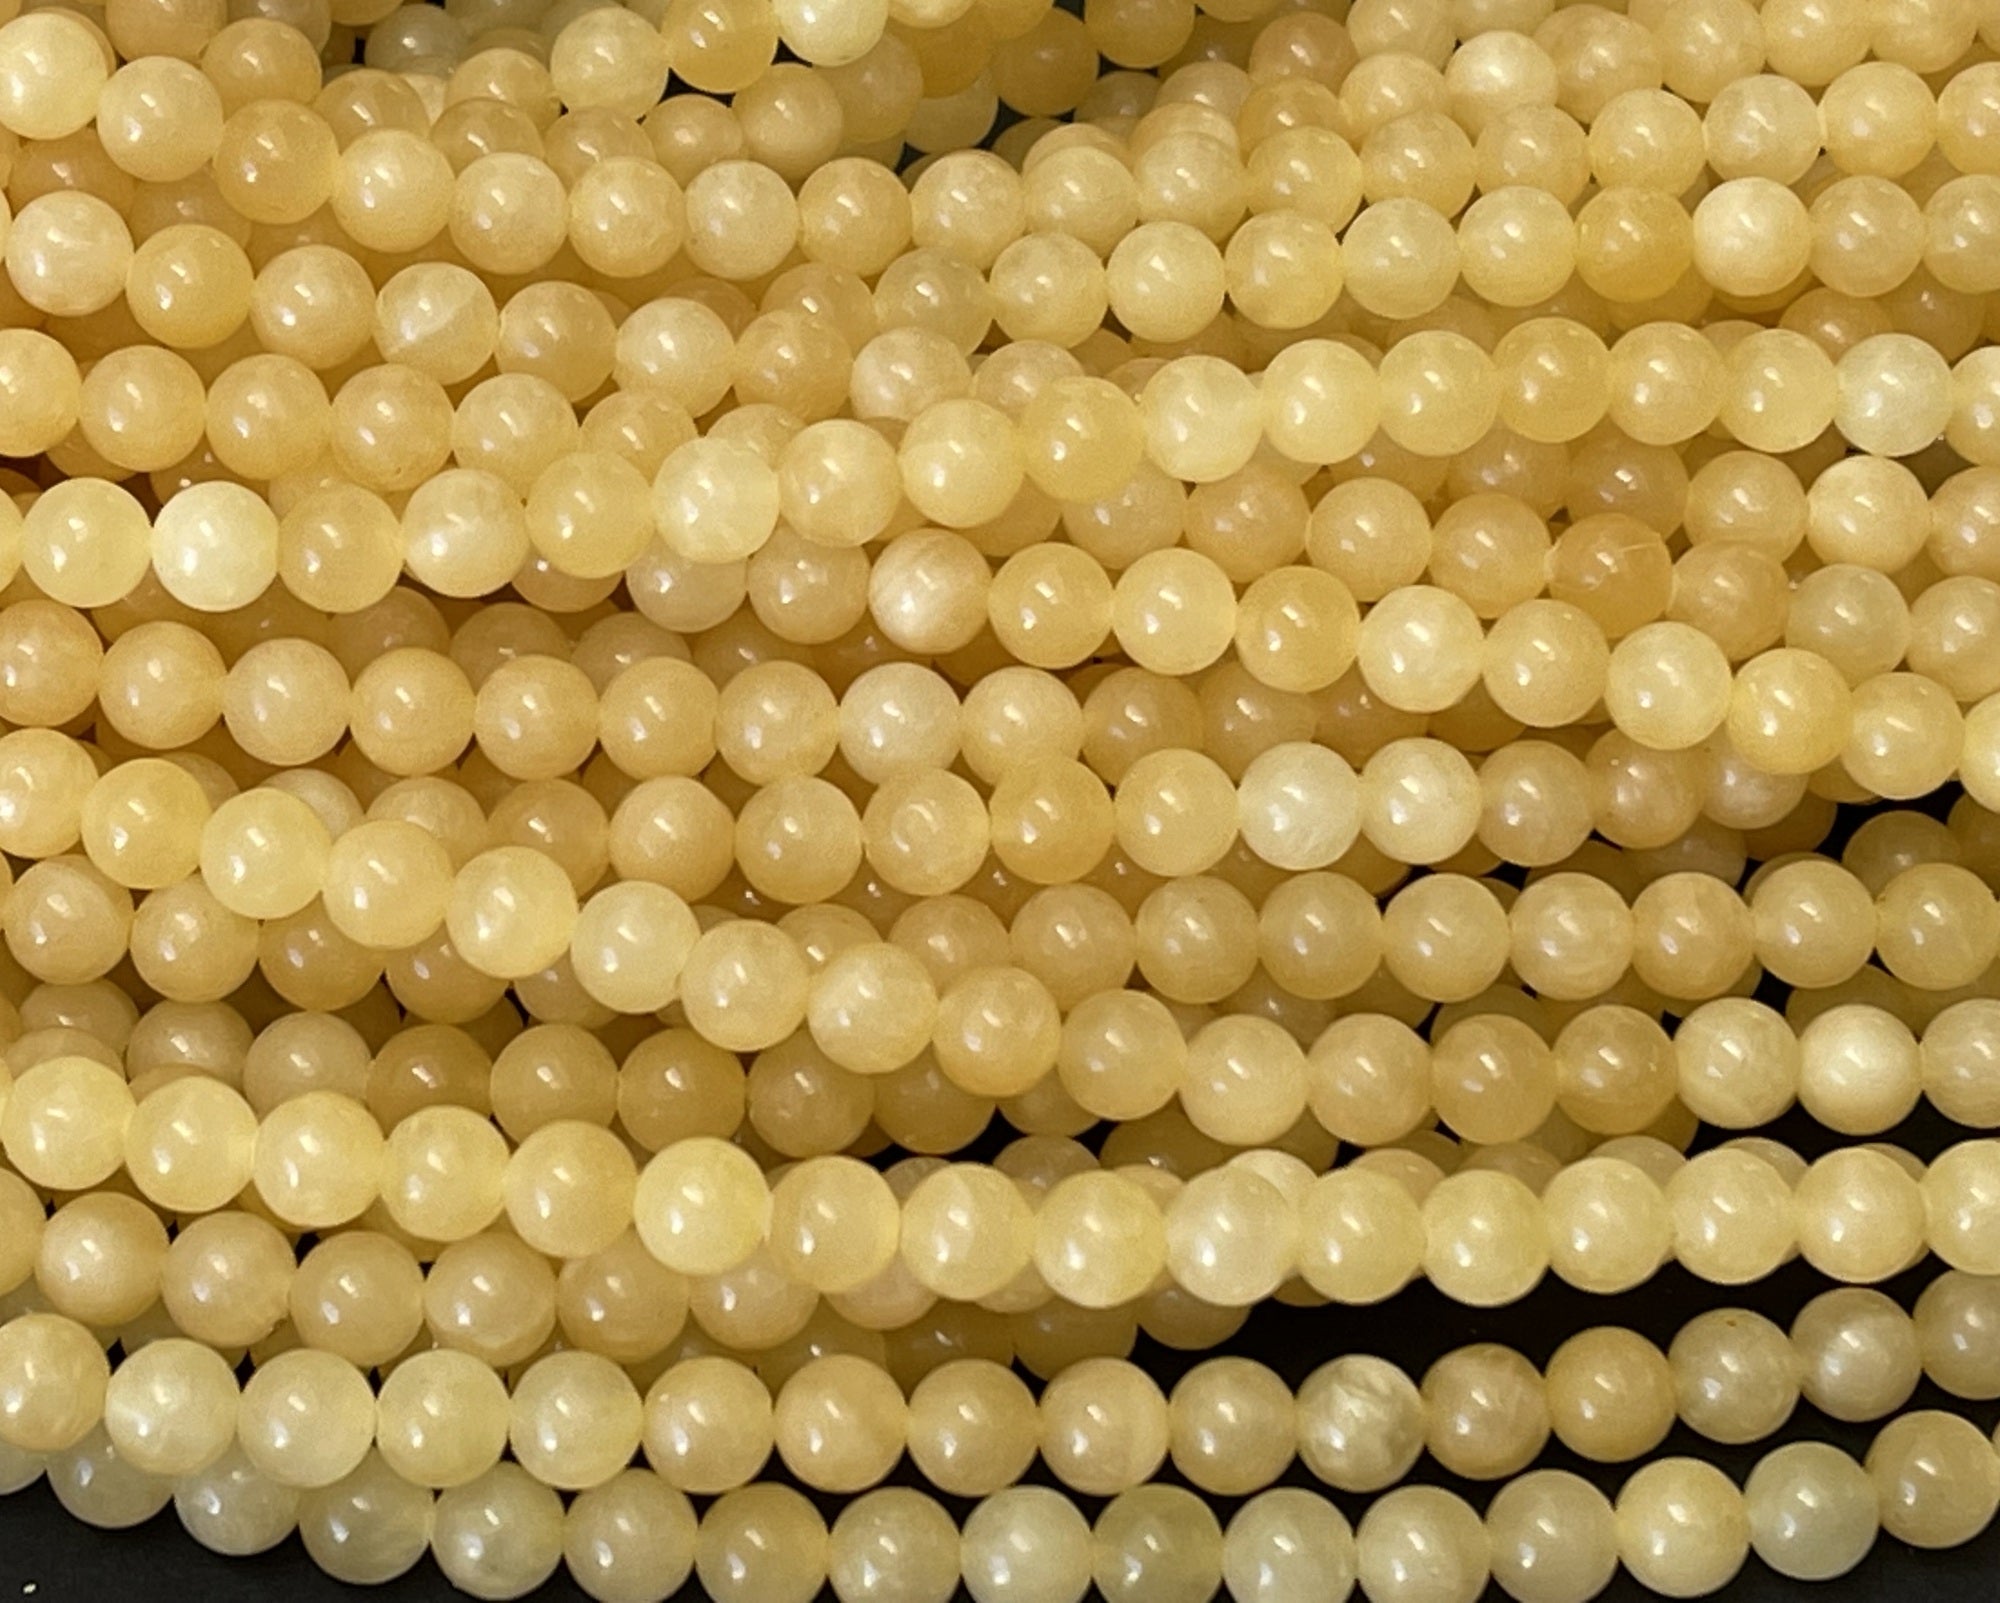 Yellow Jade 6mm round natural gemstone beads 15" strand